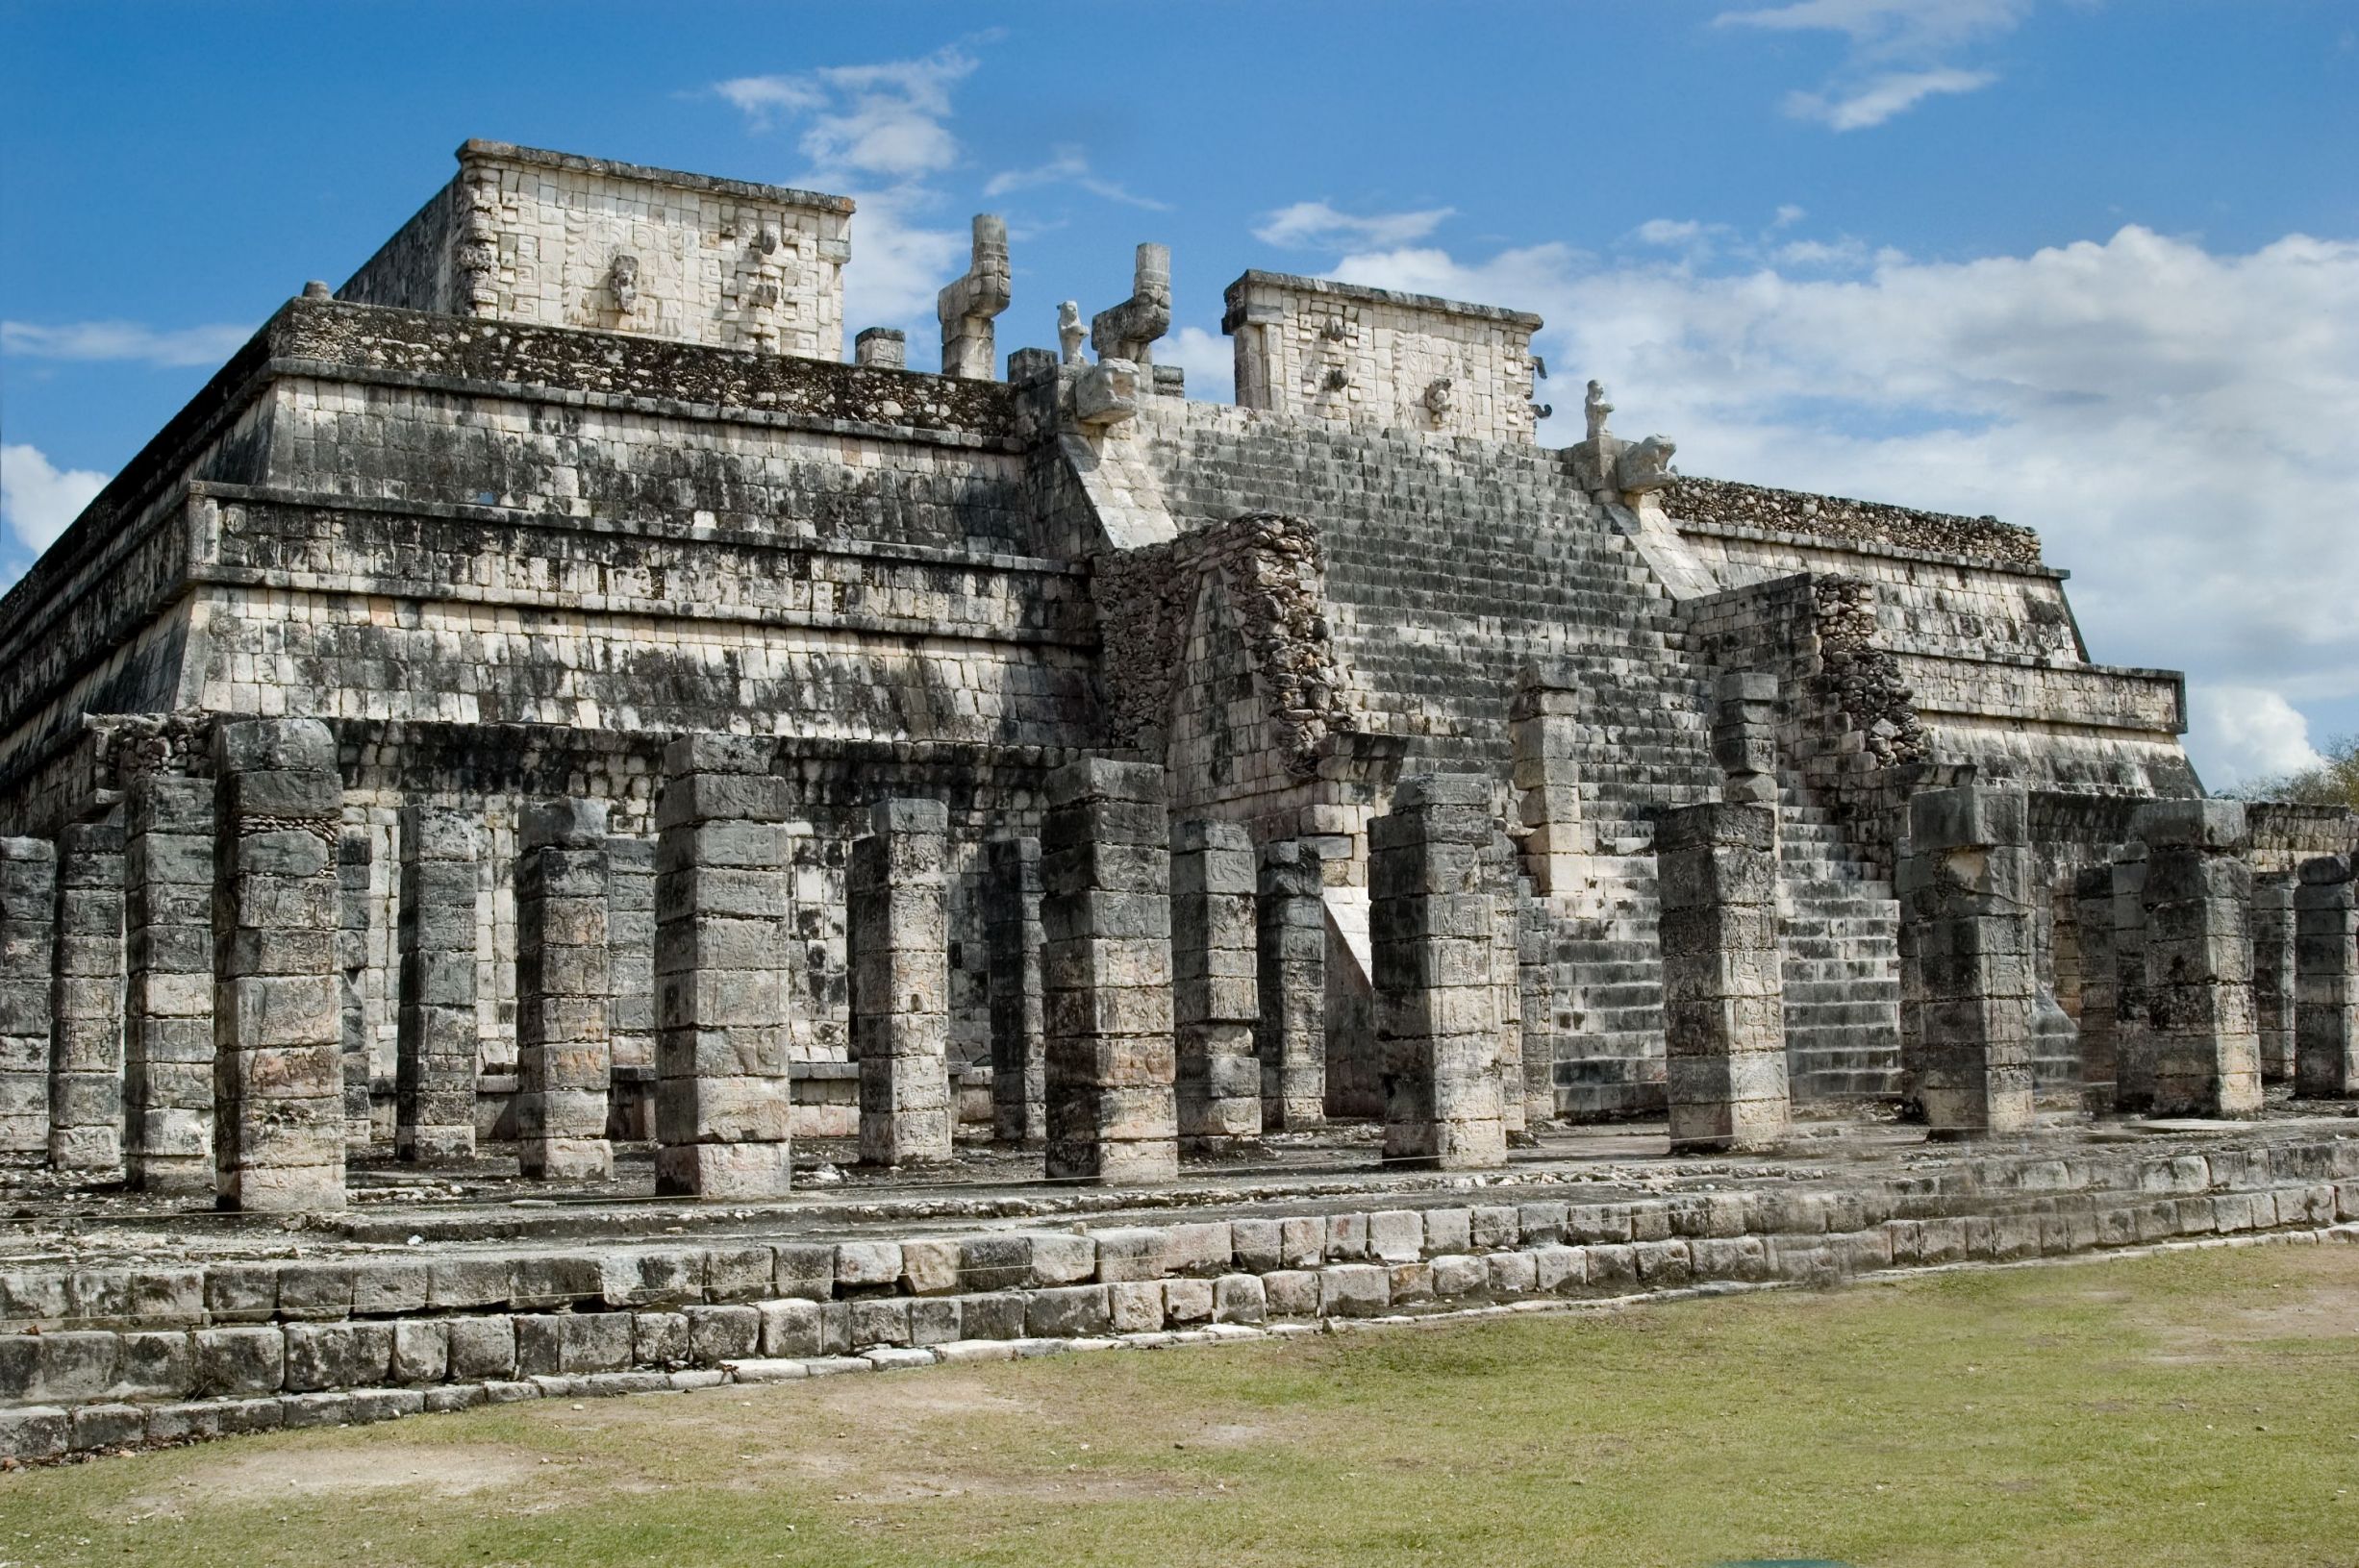 Mayan ruins, Chichen Itza, Mexico